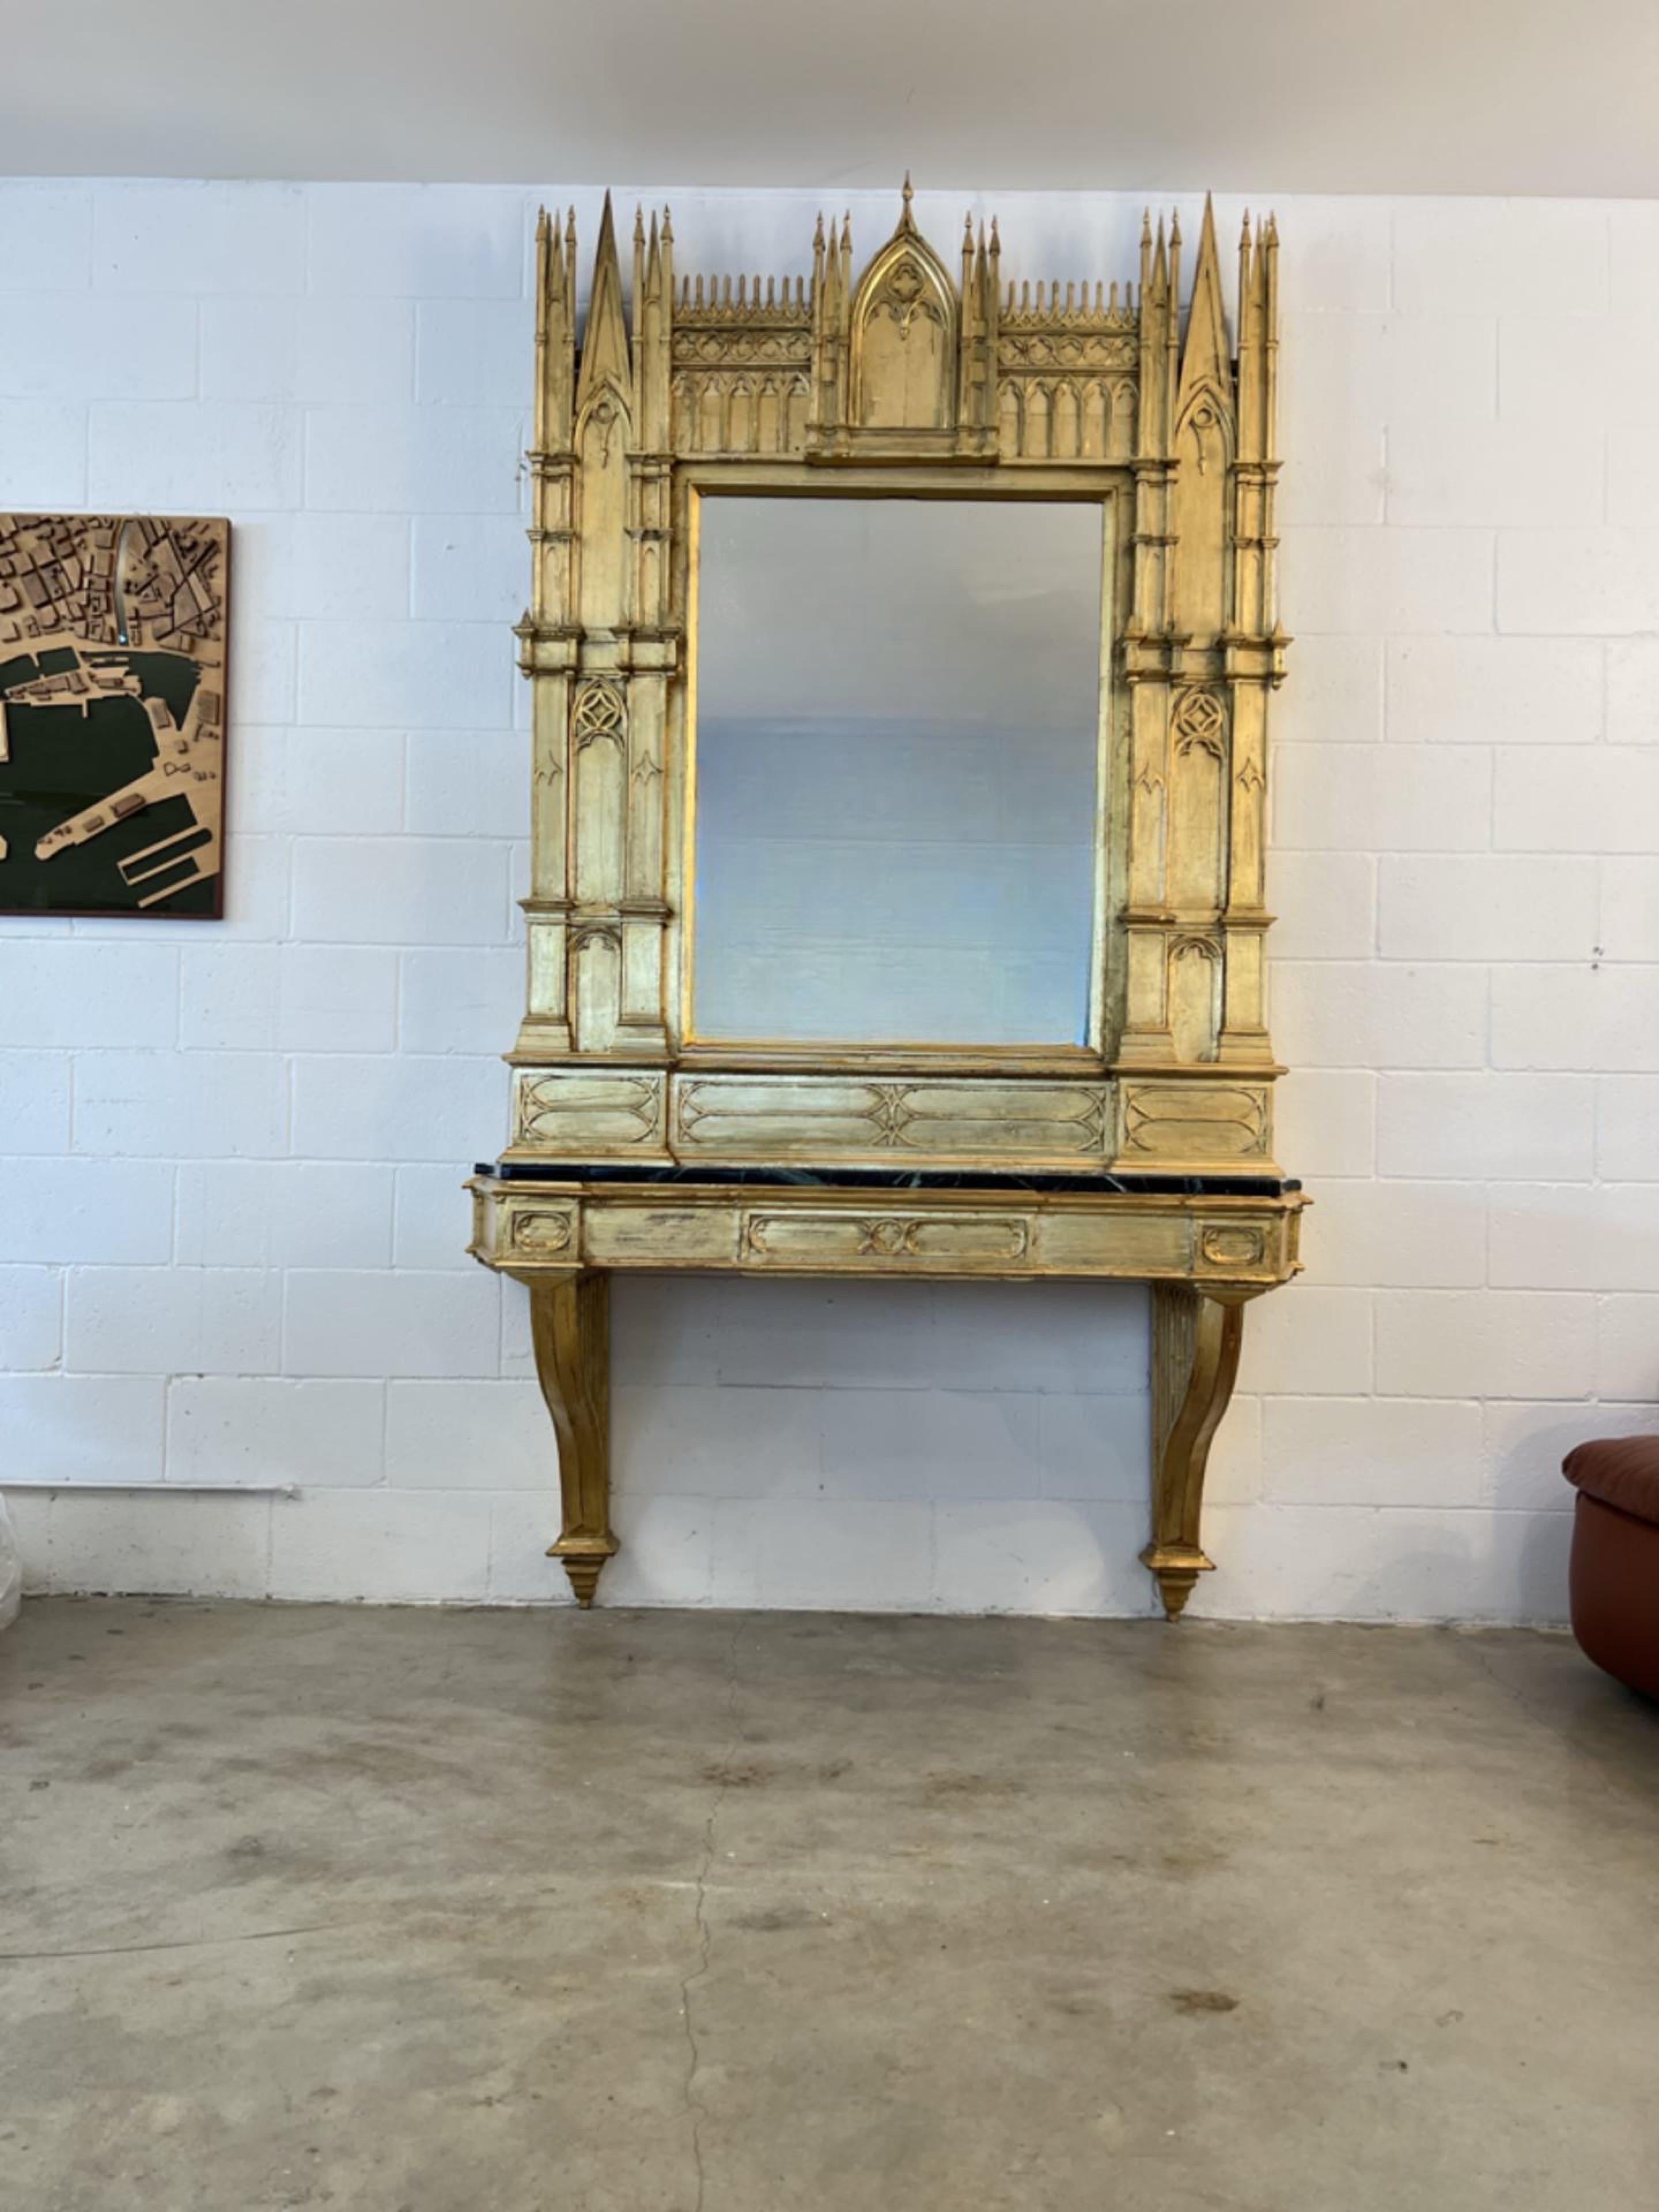 Italienische gotische Spiegelkonsole aus Blattgold mit schwarzer Marmorplatte 1920er Jahre.
Statement Stück komplett in Blattgold von Paolo Lumini, restauriert er das ganze Stück geben ein völlig frisches Aussehen und ein neues Leben zu einer